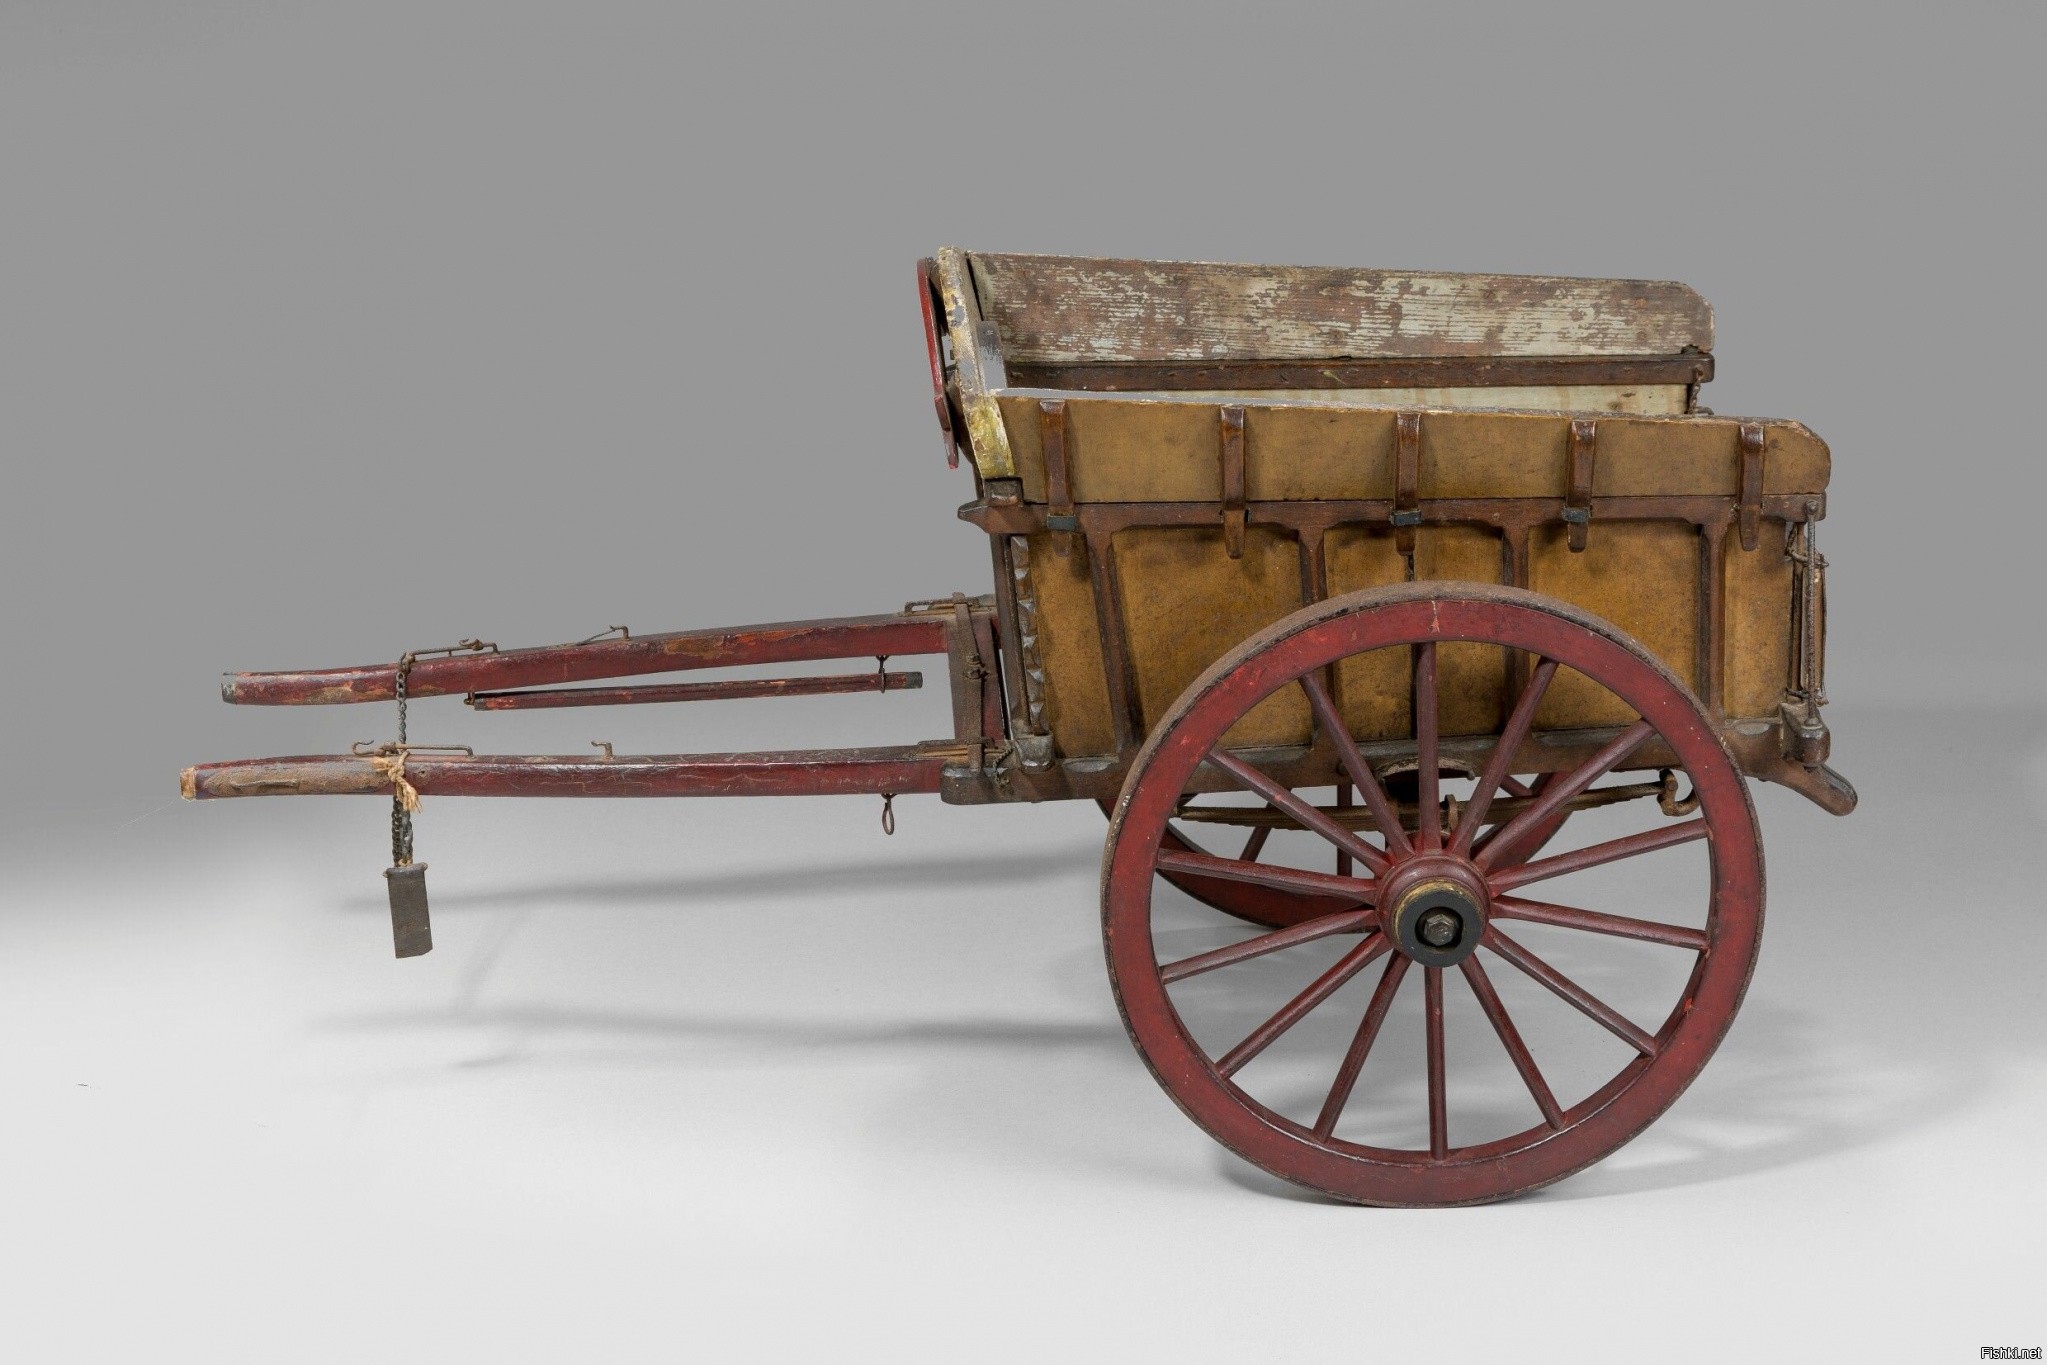 Повозка с двумя колесами на оси. Телега 19 век. Двуколка 17 век. Двуколка 19 век. Грузовая повозка 19 век.